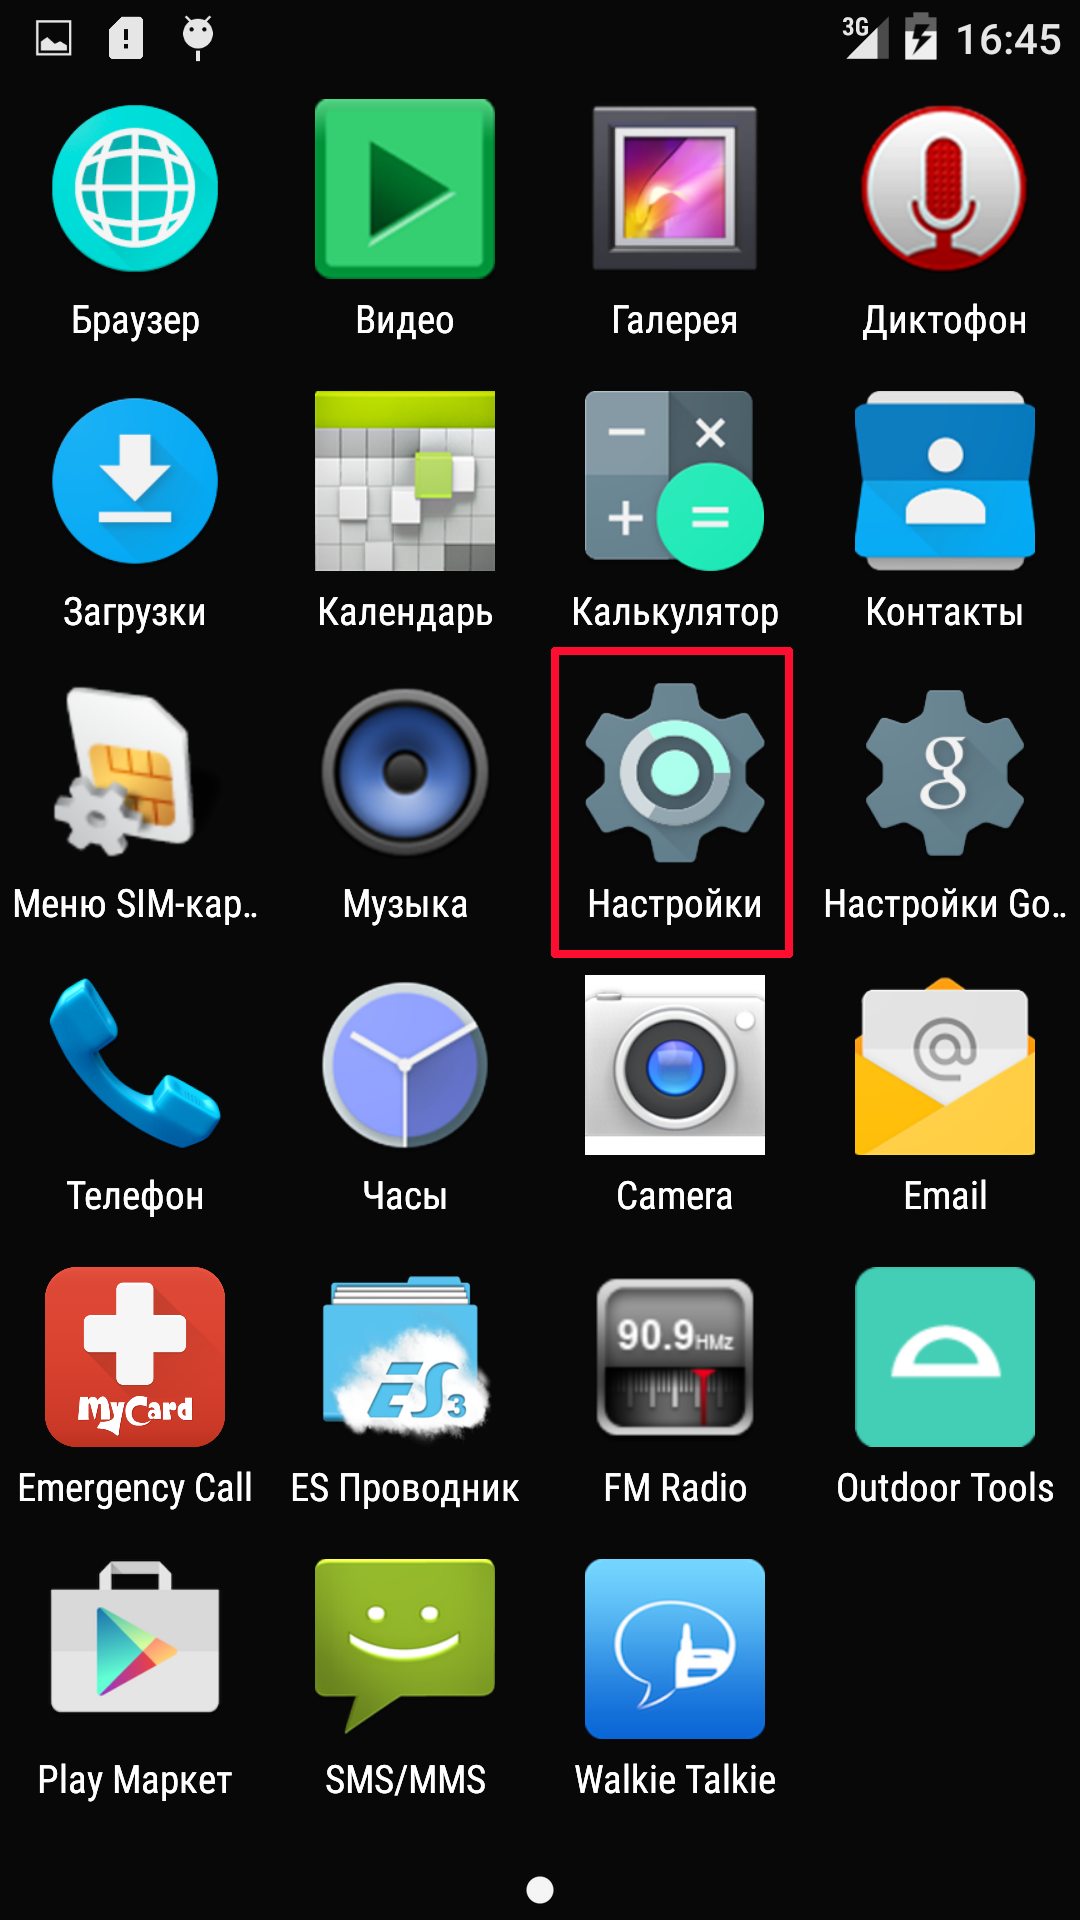 Приложение телеграмм скачать бесплатно на андроид на русском языке и установить без рекламы андроид фото 66